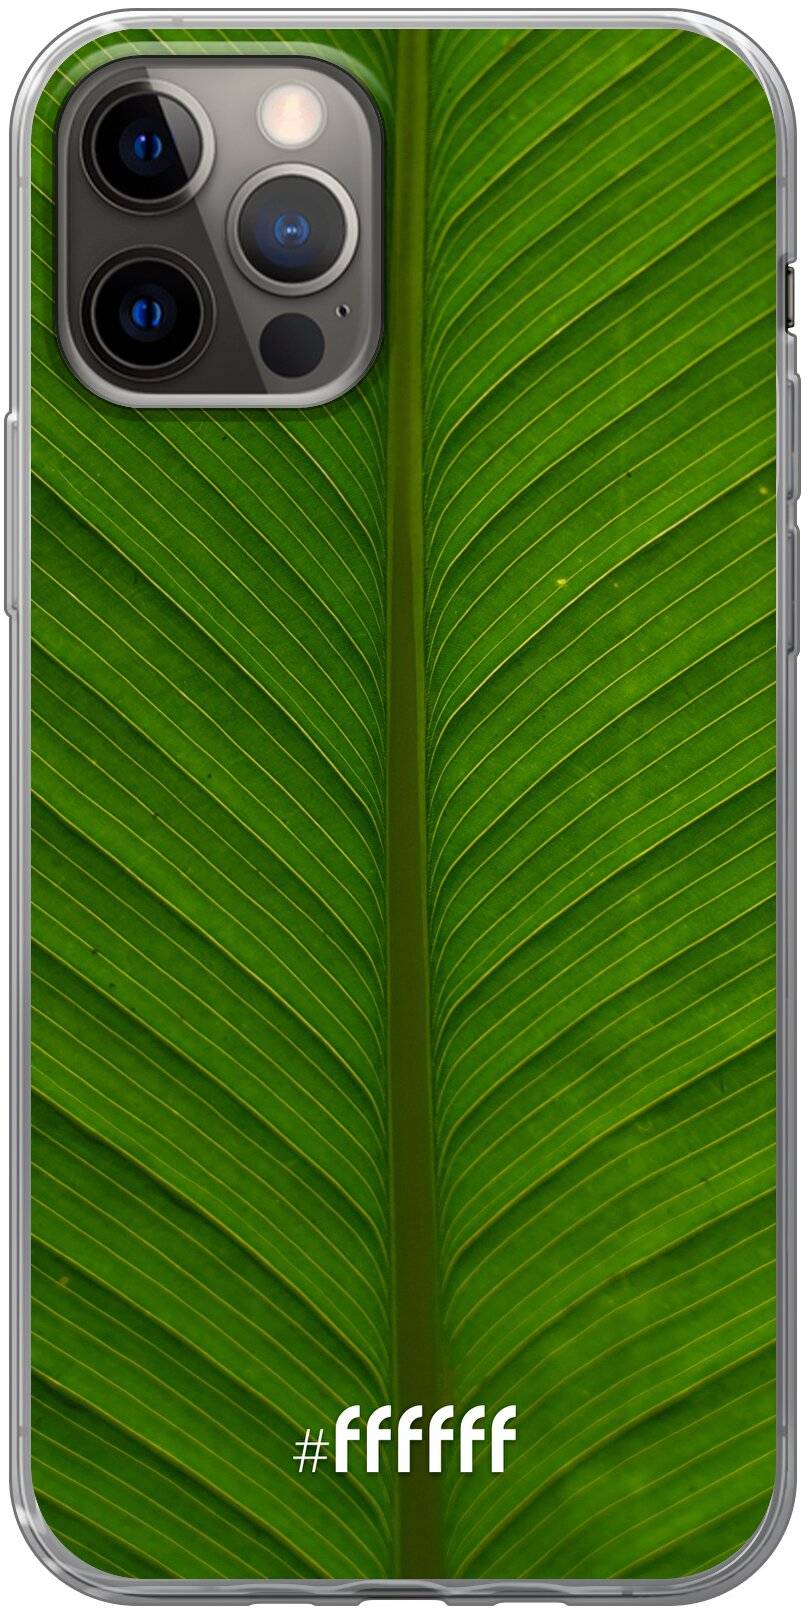 Unseen Green iPhone 12